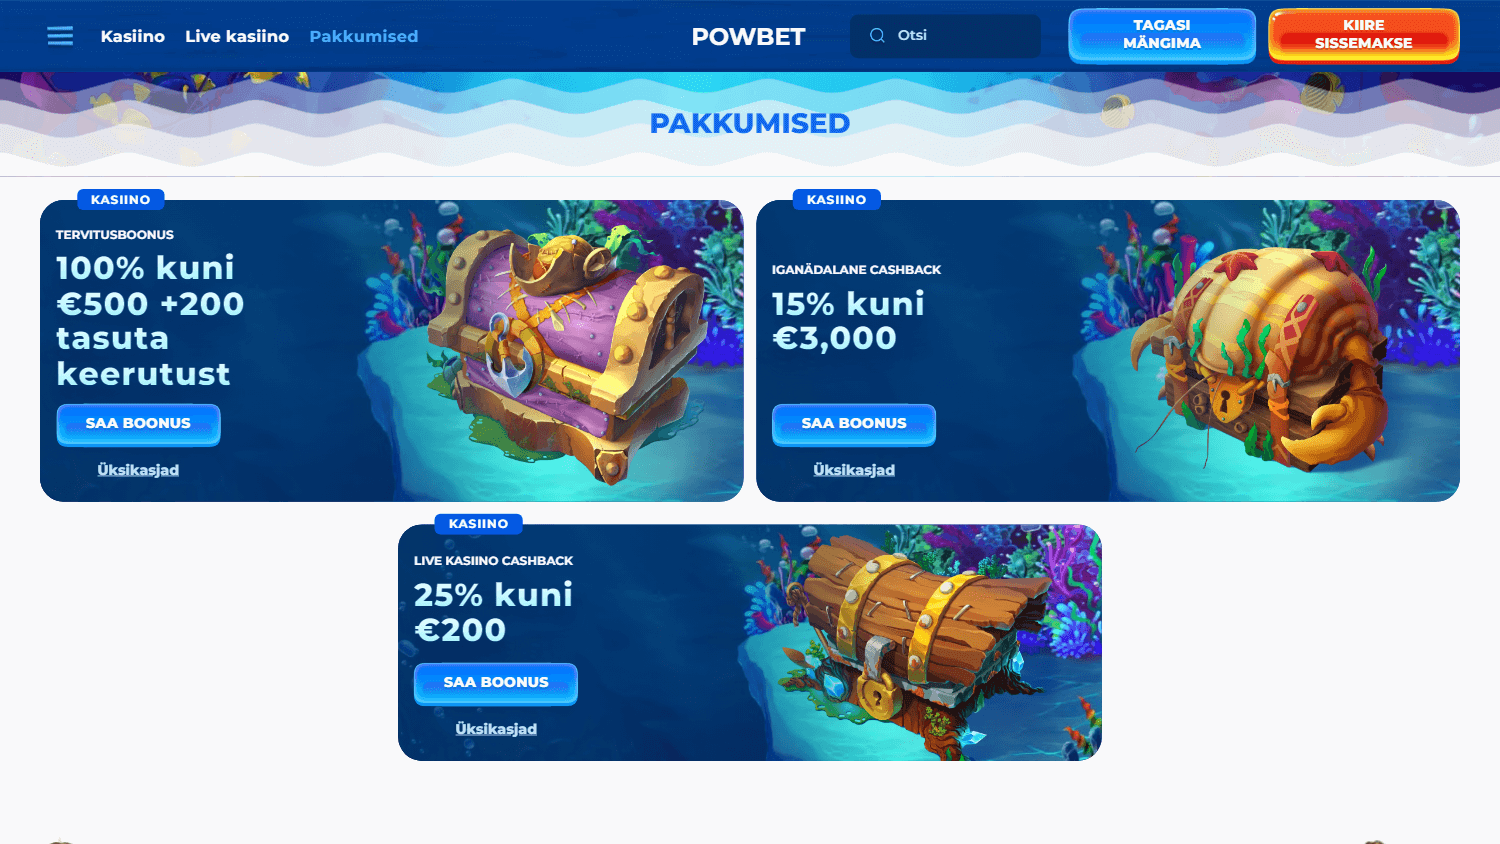 powbet_casino_ee_promotions_desktop